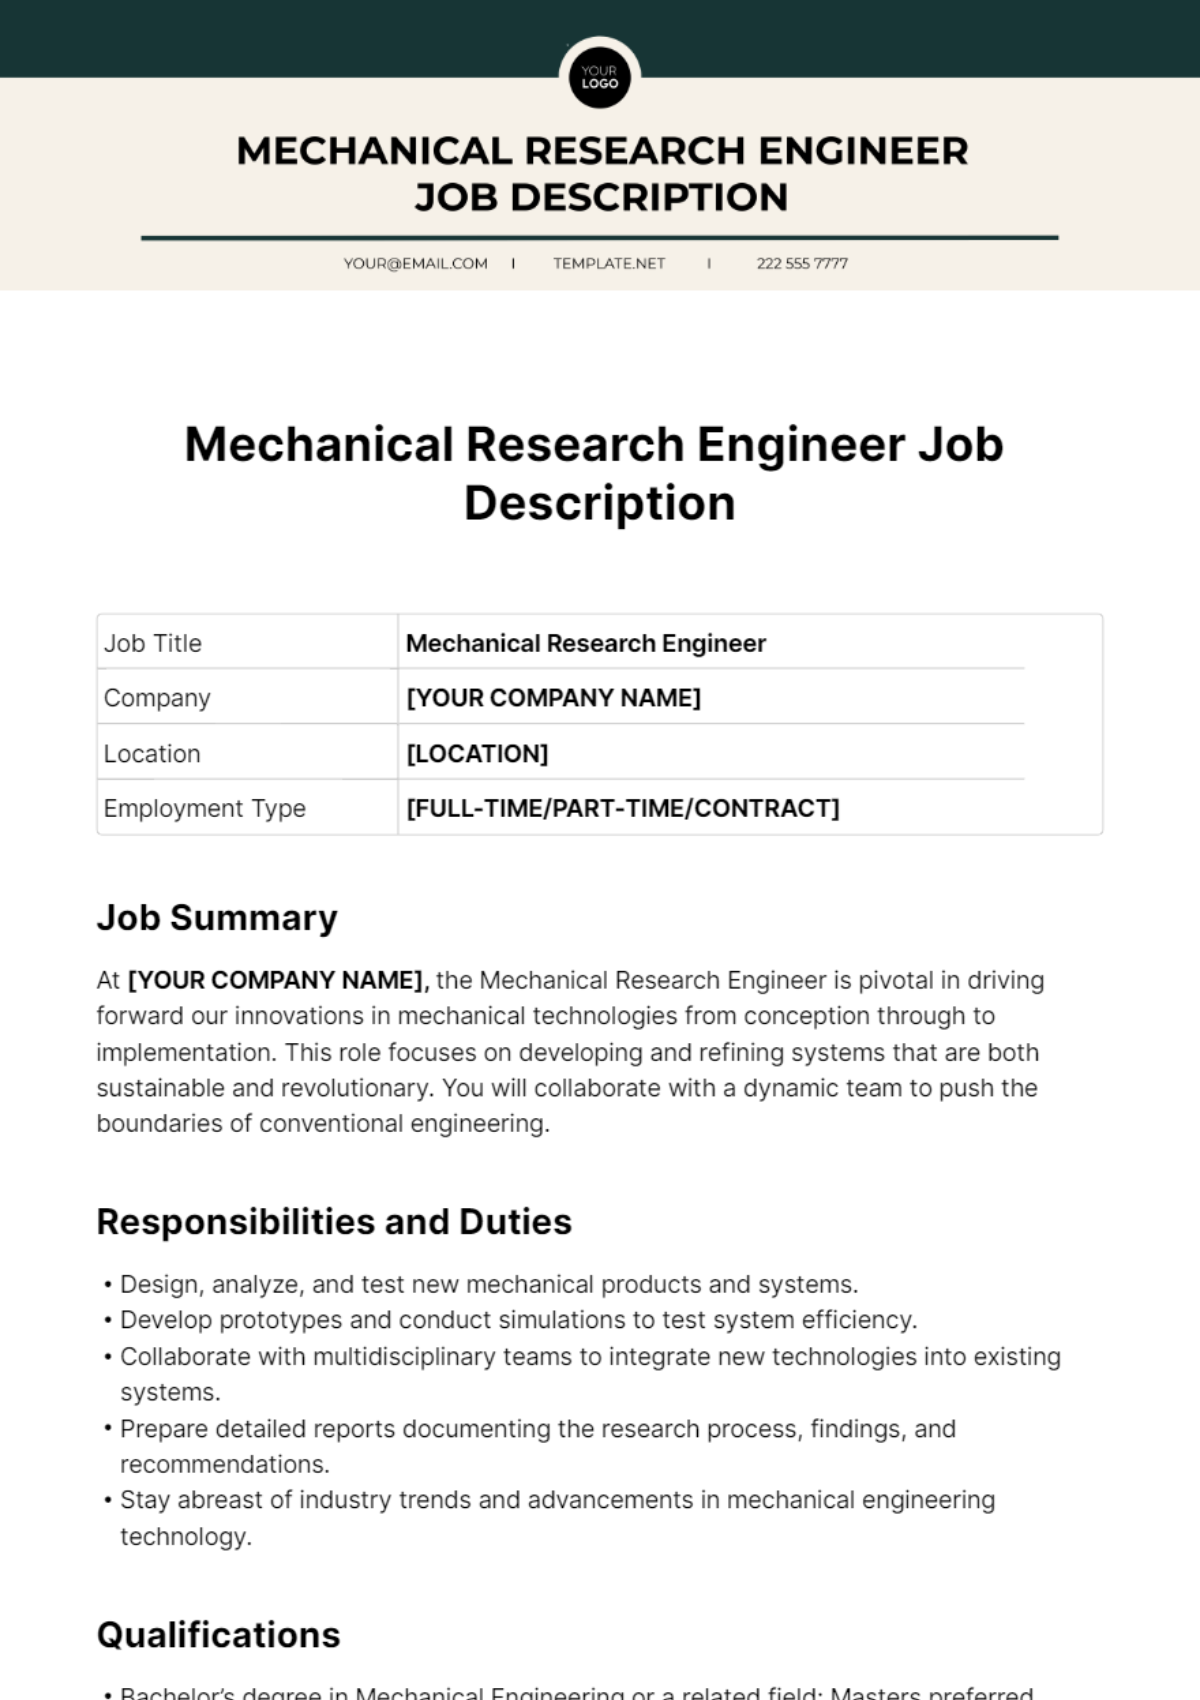 Mechanical Research Engineer Job Description Template